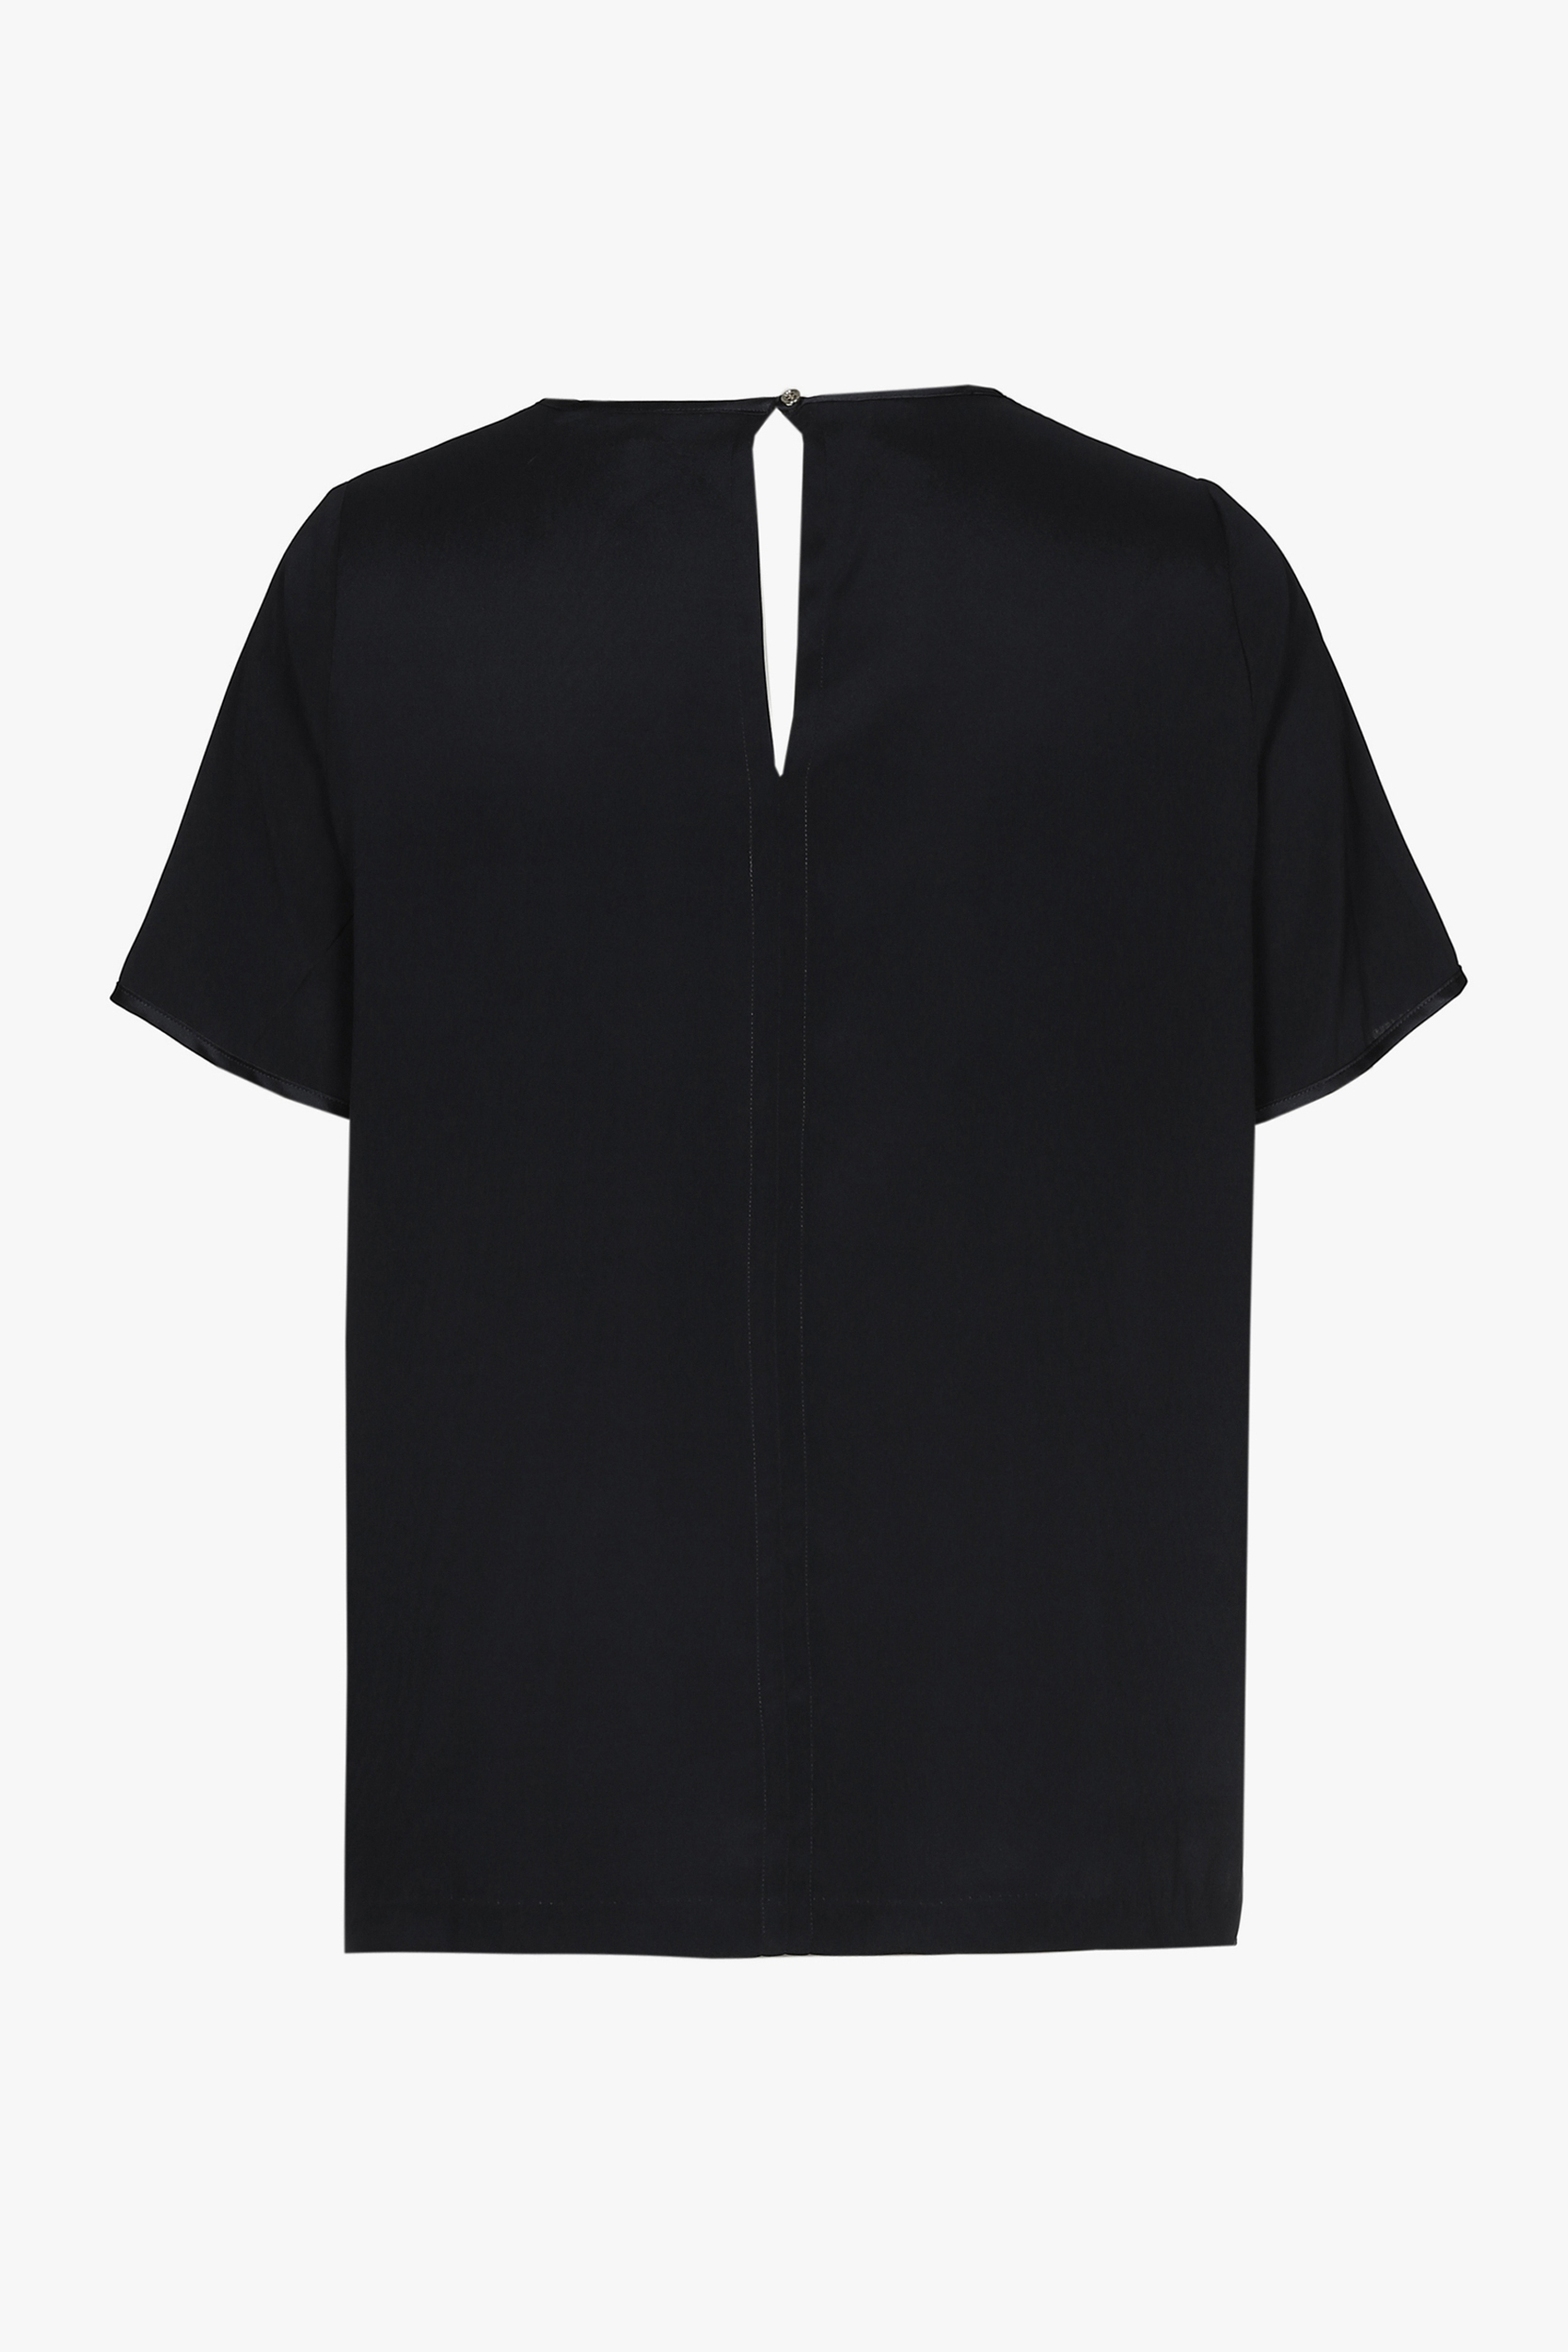 T-shirt en soie noir à manches courtes et col en V